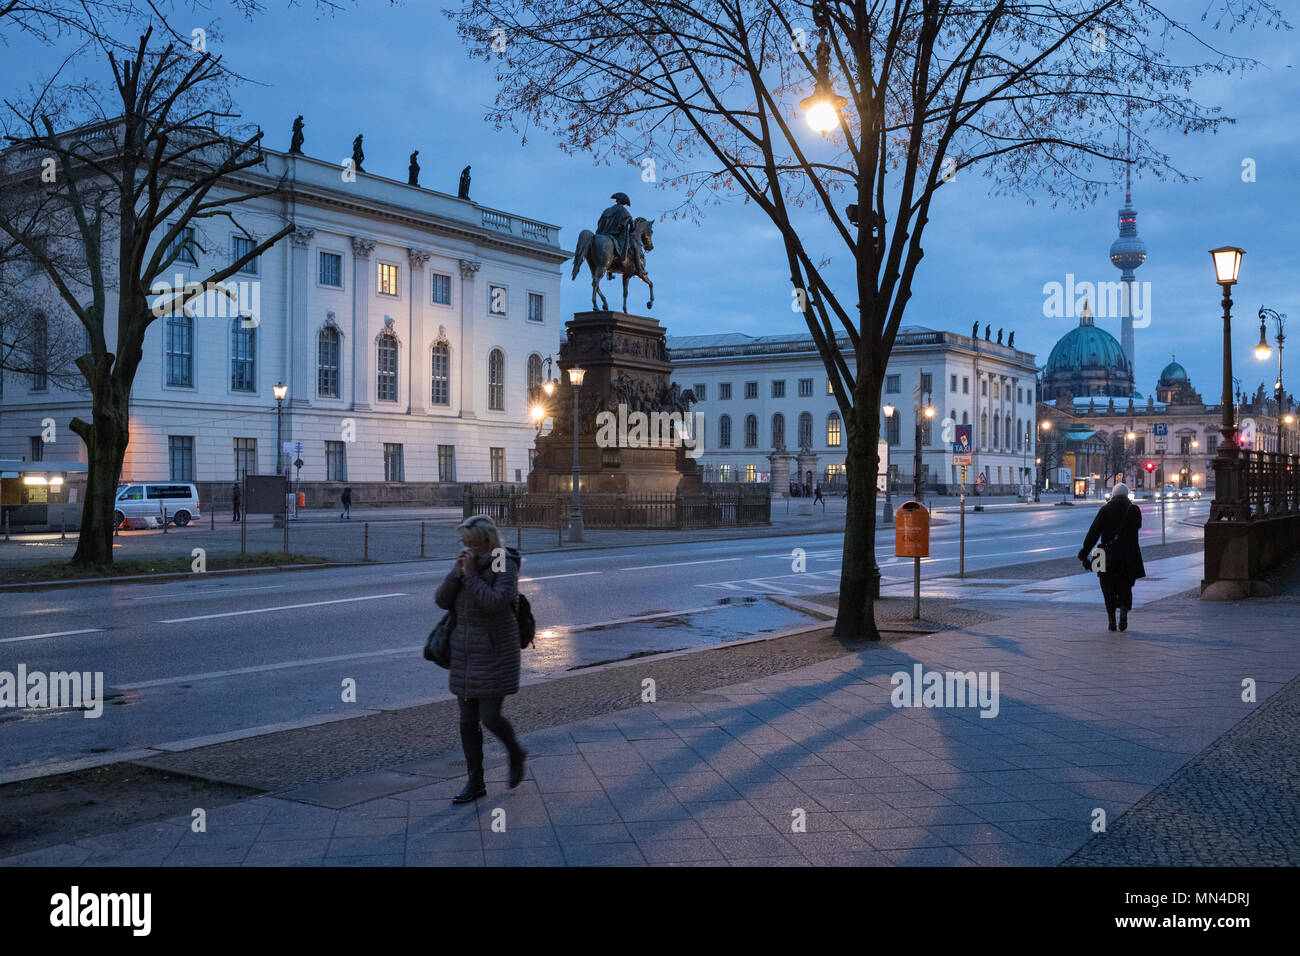 Die Statue von Friedrich der Große, Berliner Dom, Fernsehturm und Unter den Linden in der Nacht, Mitte, Berlin, Deutschland Stockfoto